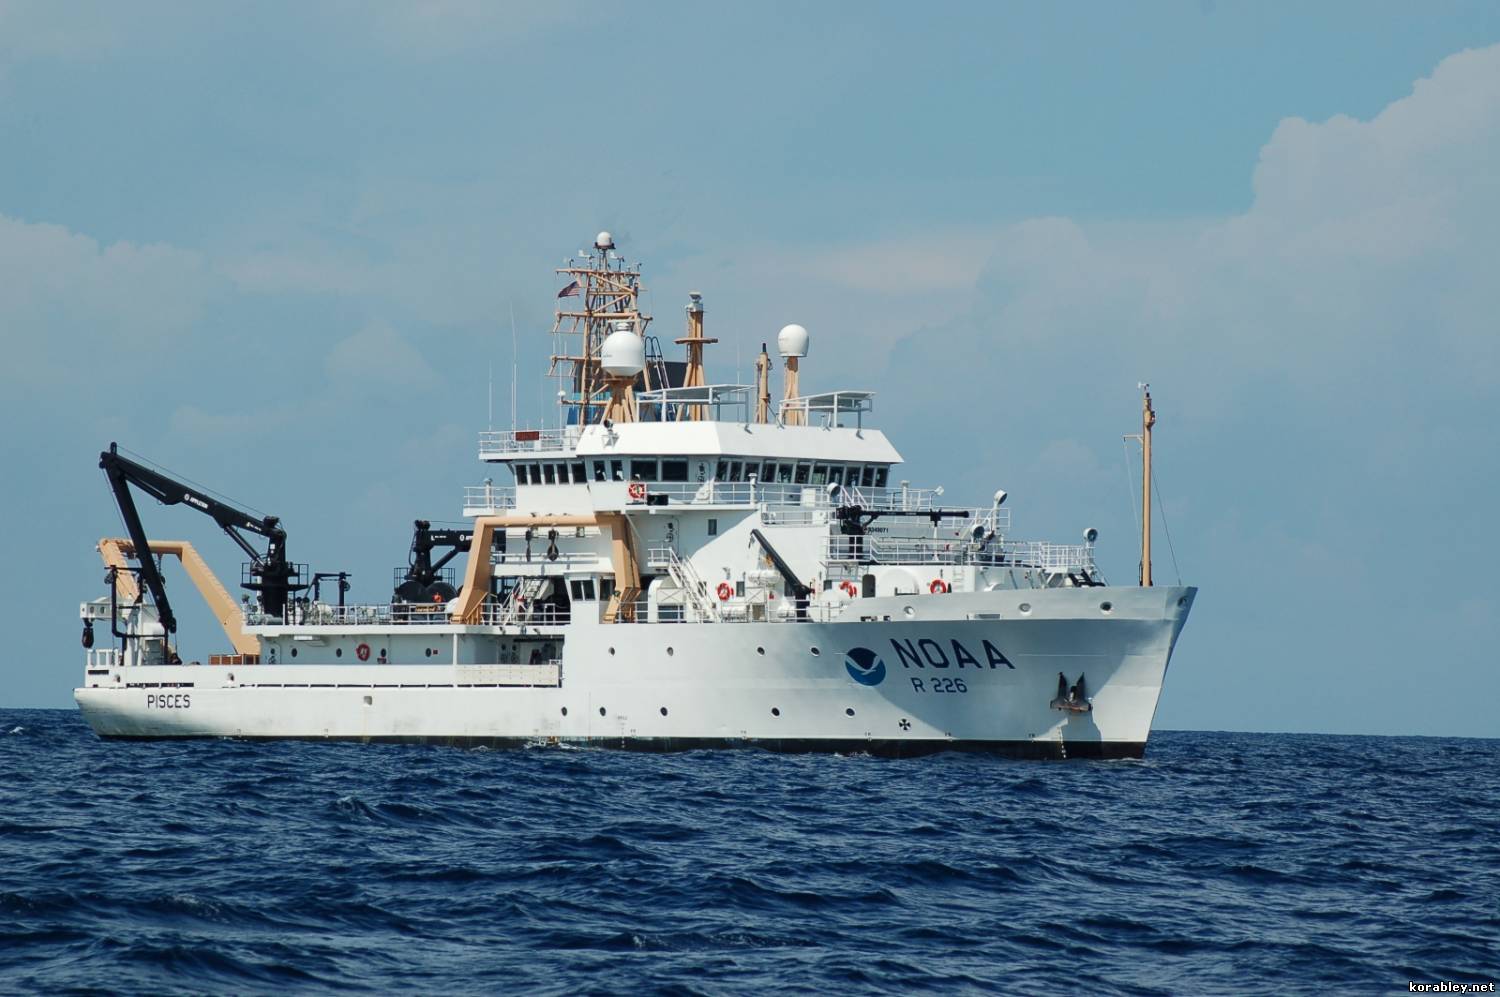 The survey vessel Pisces